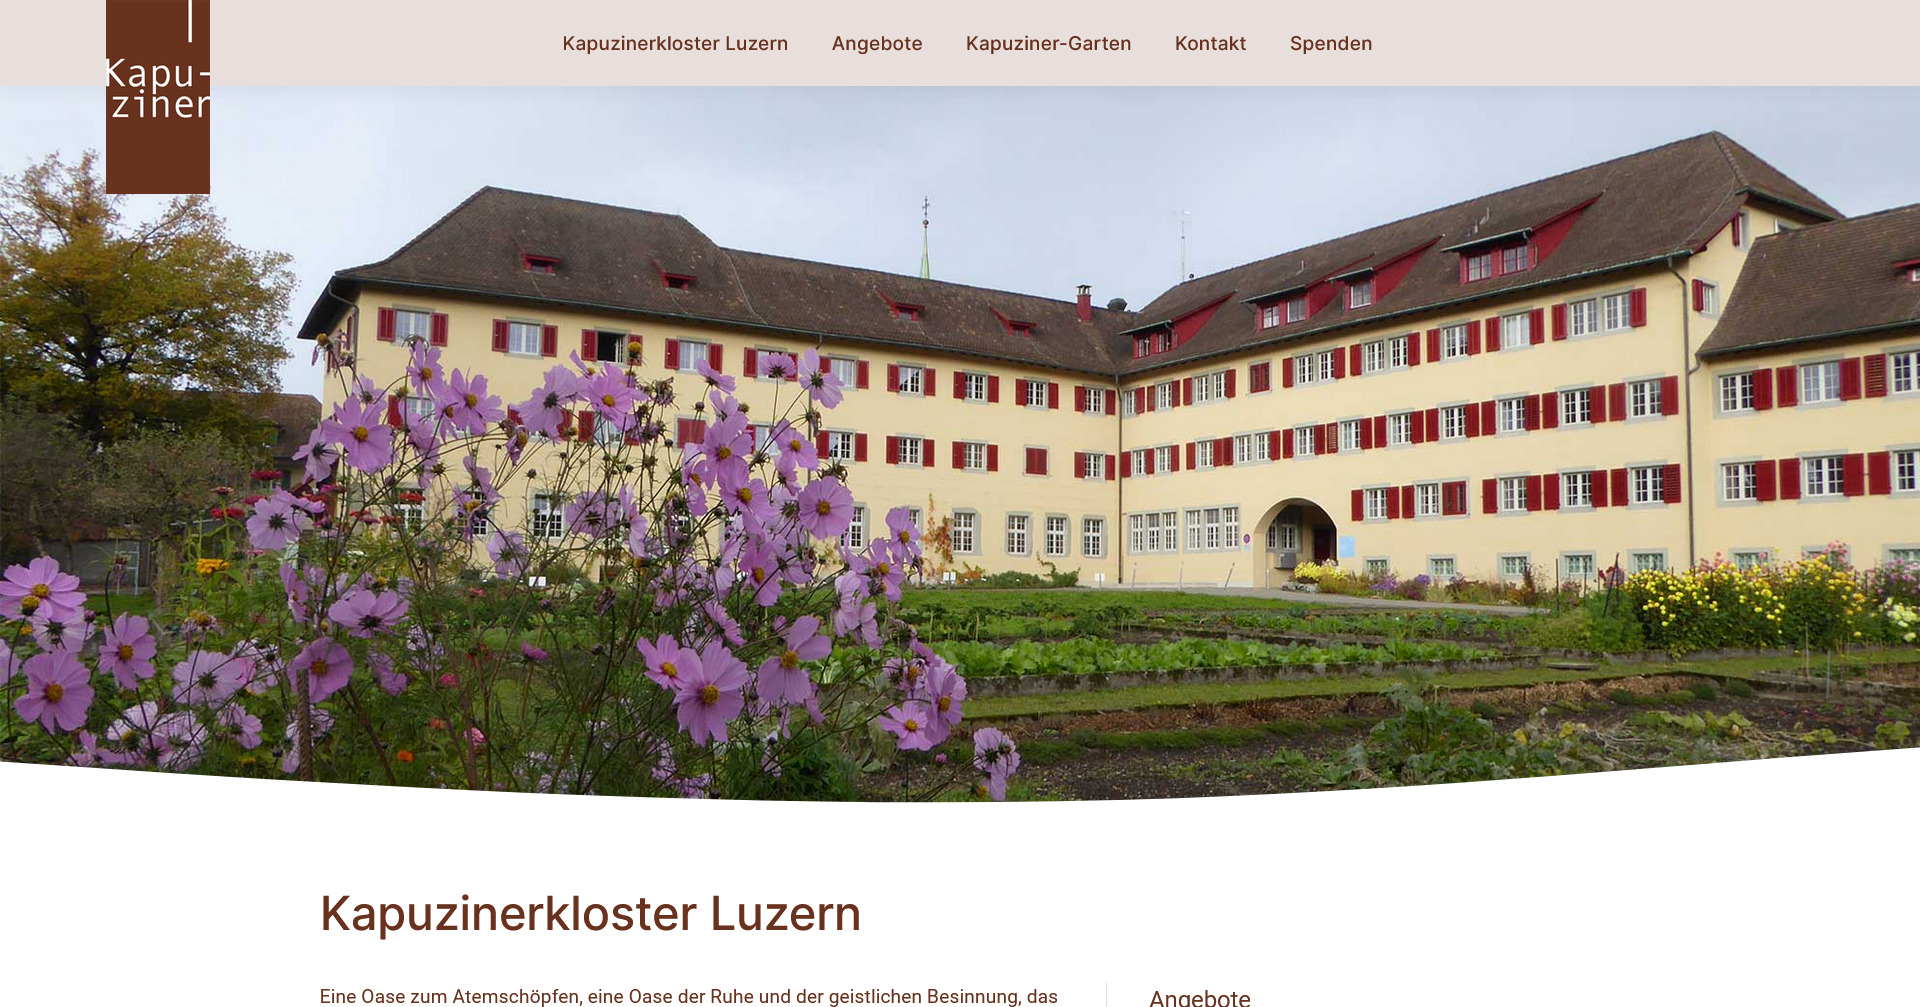 Kloster Luzern